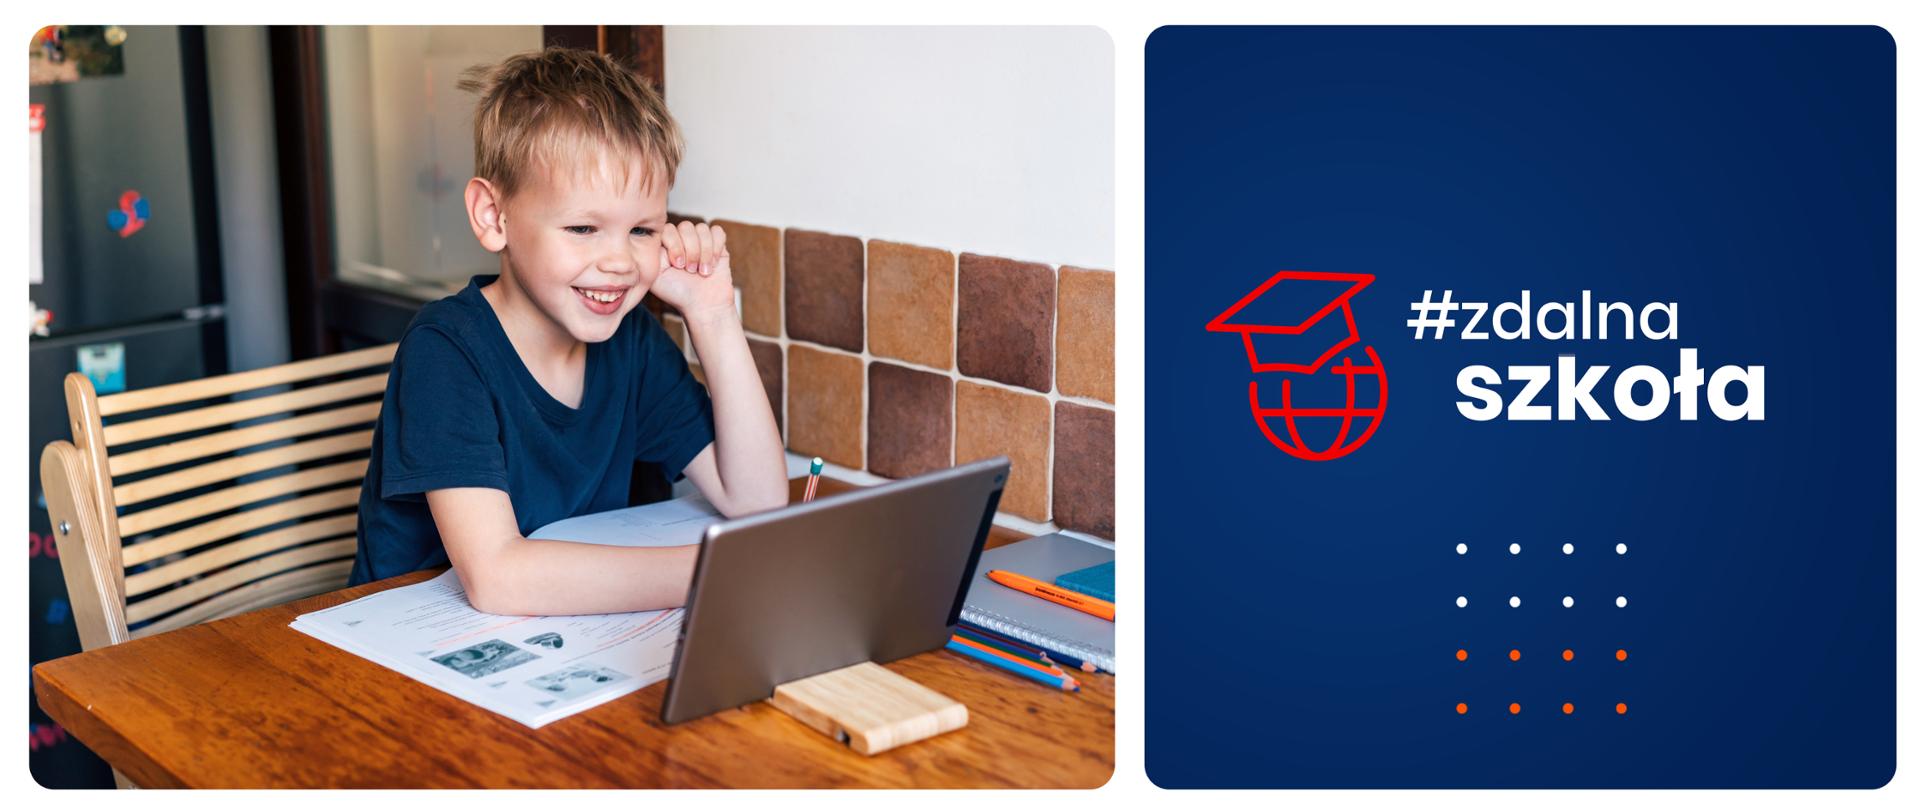 Po lewej stronie zdjęcie uśmiechniętego dziecka siedzącego w kuchni przy stole podczas odrabiania lekcji. Na blacie rozłożone są podręczniki, zeszyty i kredki, na podstawce stoi tablet. Po prawej stronie na granatowym tle logotyp Zdalnej Szkoły.